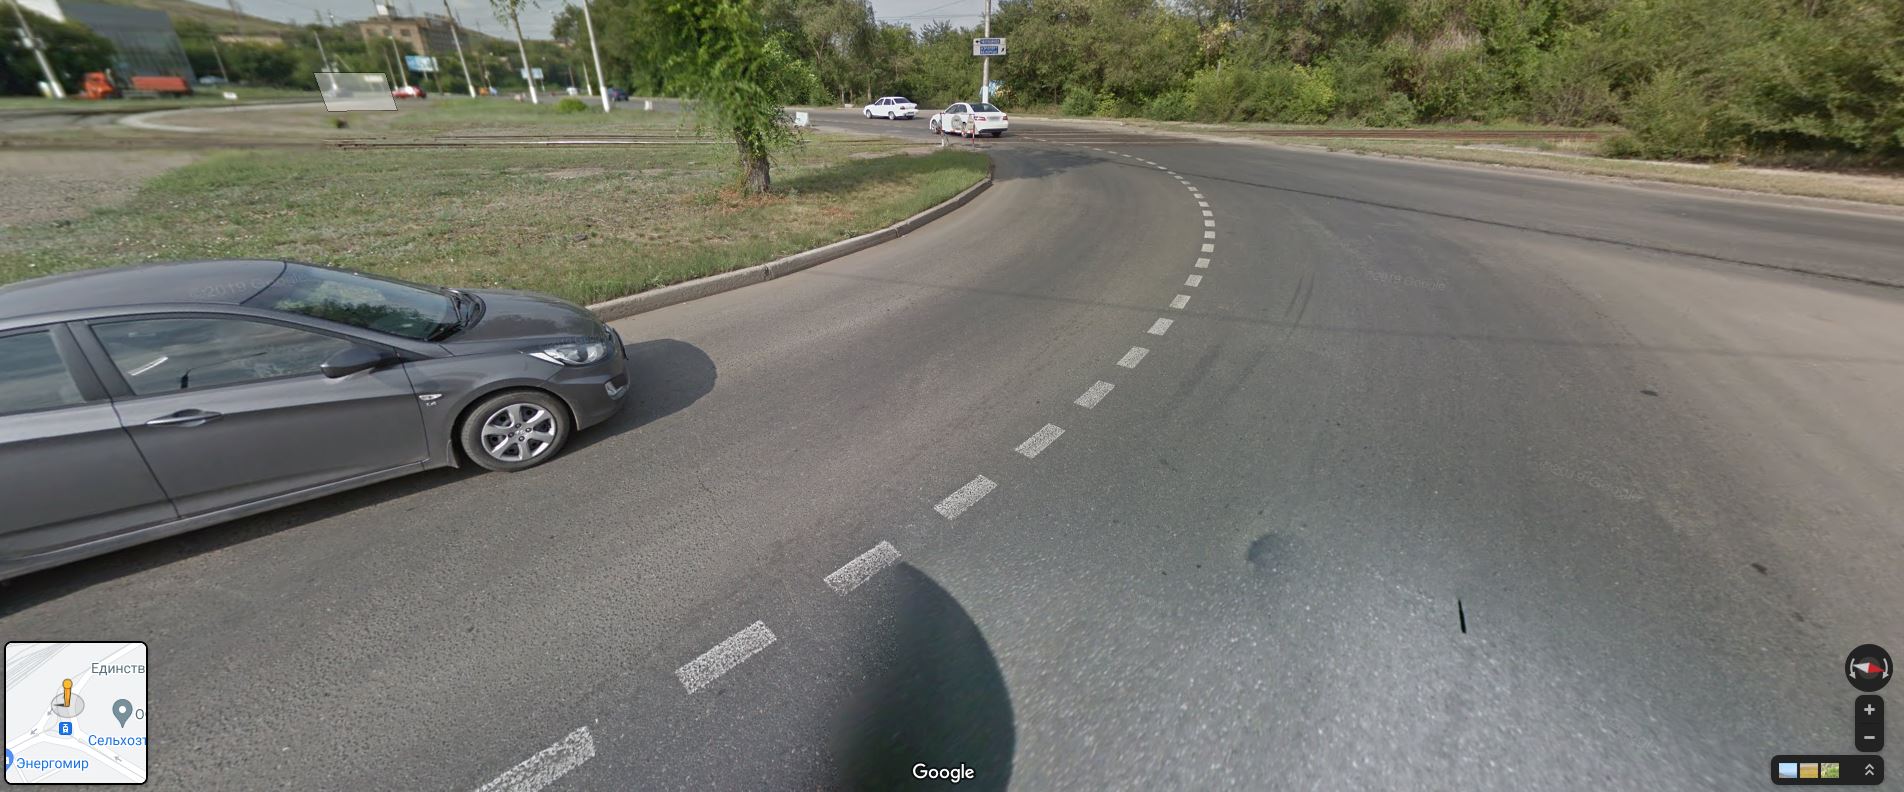 Участок дороги, где начался конфликт: автор видео ехал по полосе, где на фото находится серый Hyundai Solaris. Водитель KIA Rio въезжал на свободную полосу справа (это снимки с гугл-карт, где отражен летний сезон)